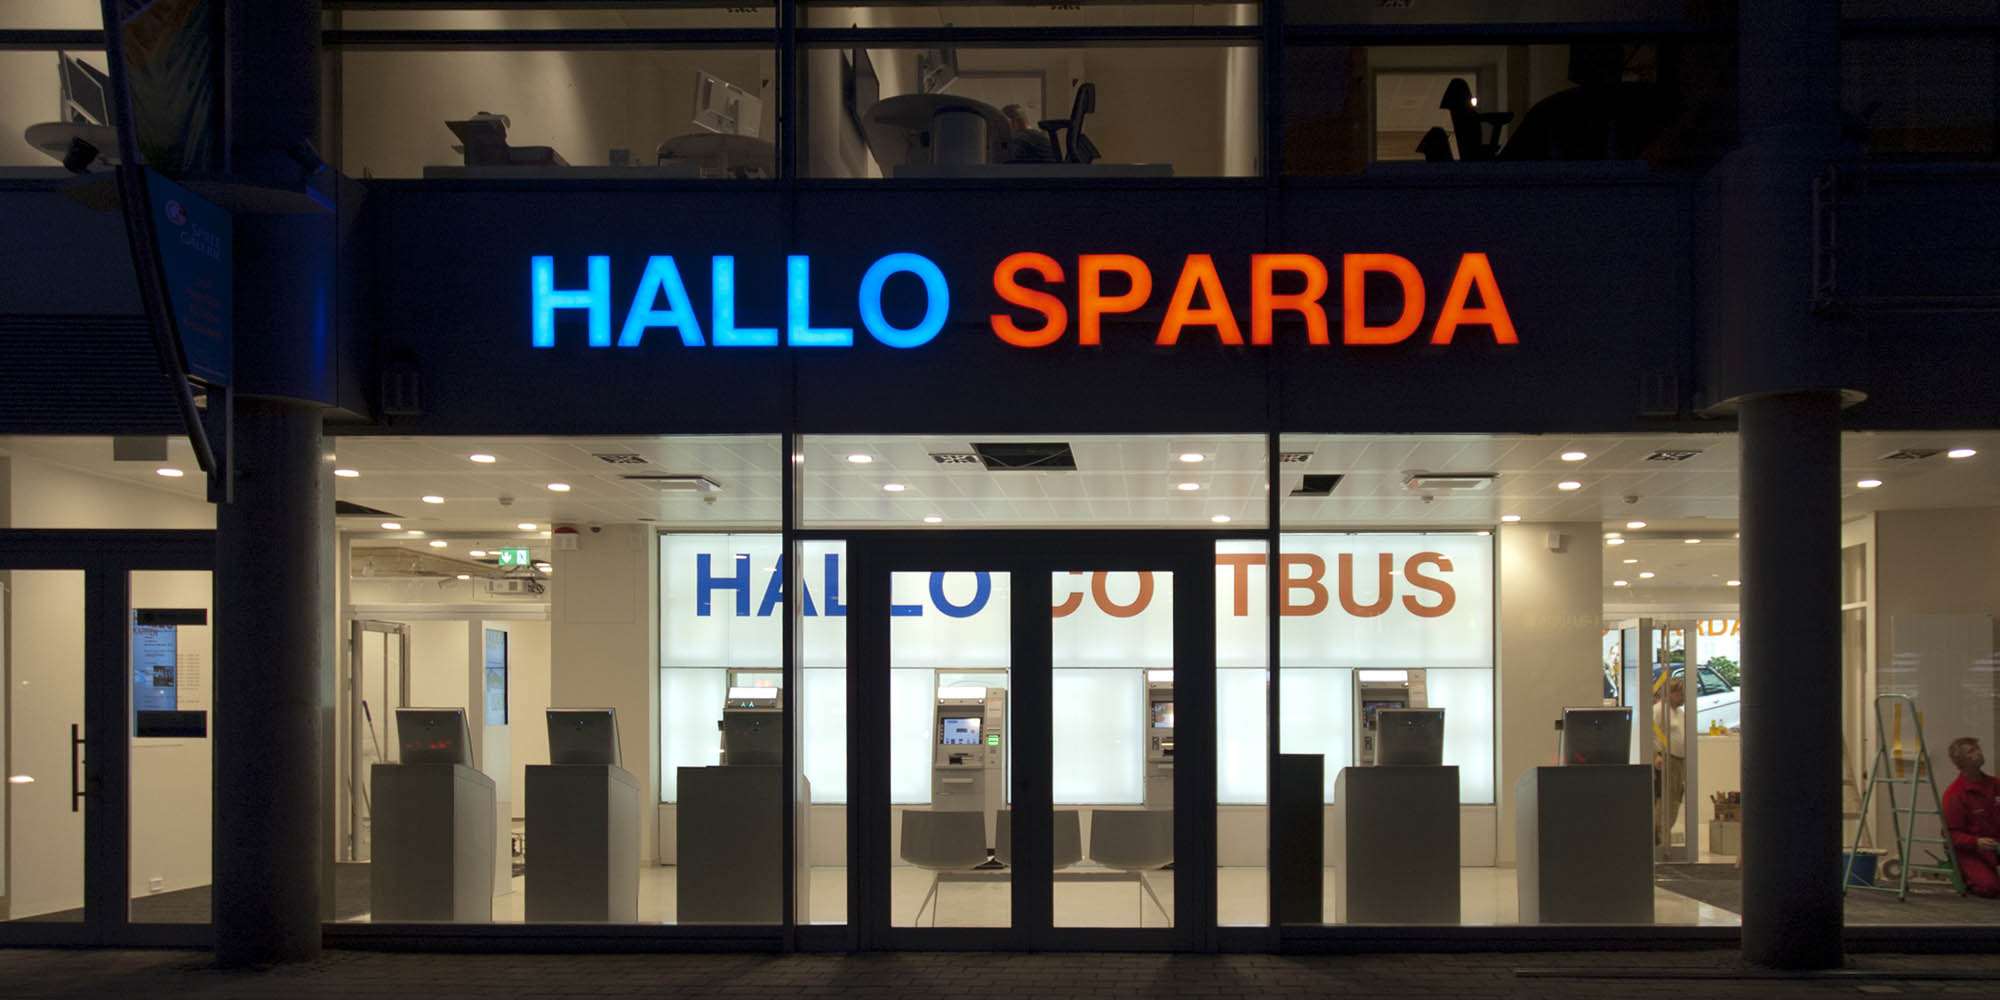 Erffnung der Sparda-Bank Filiale Cottbus